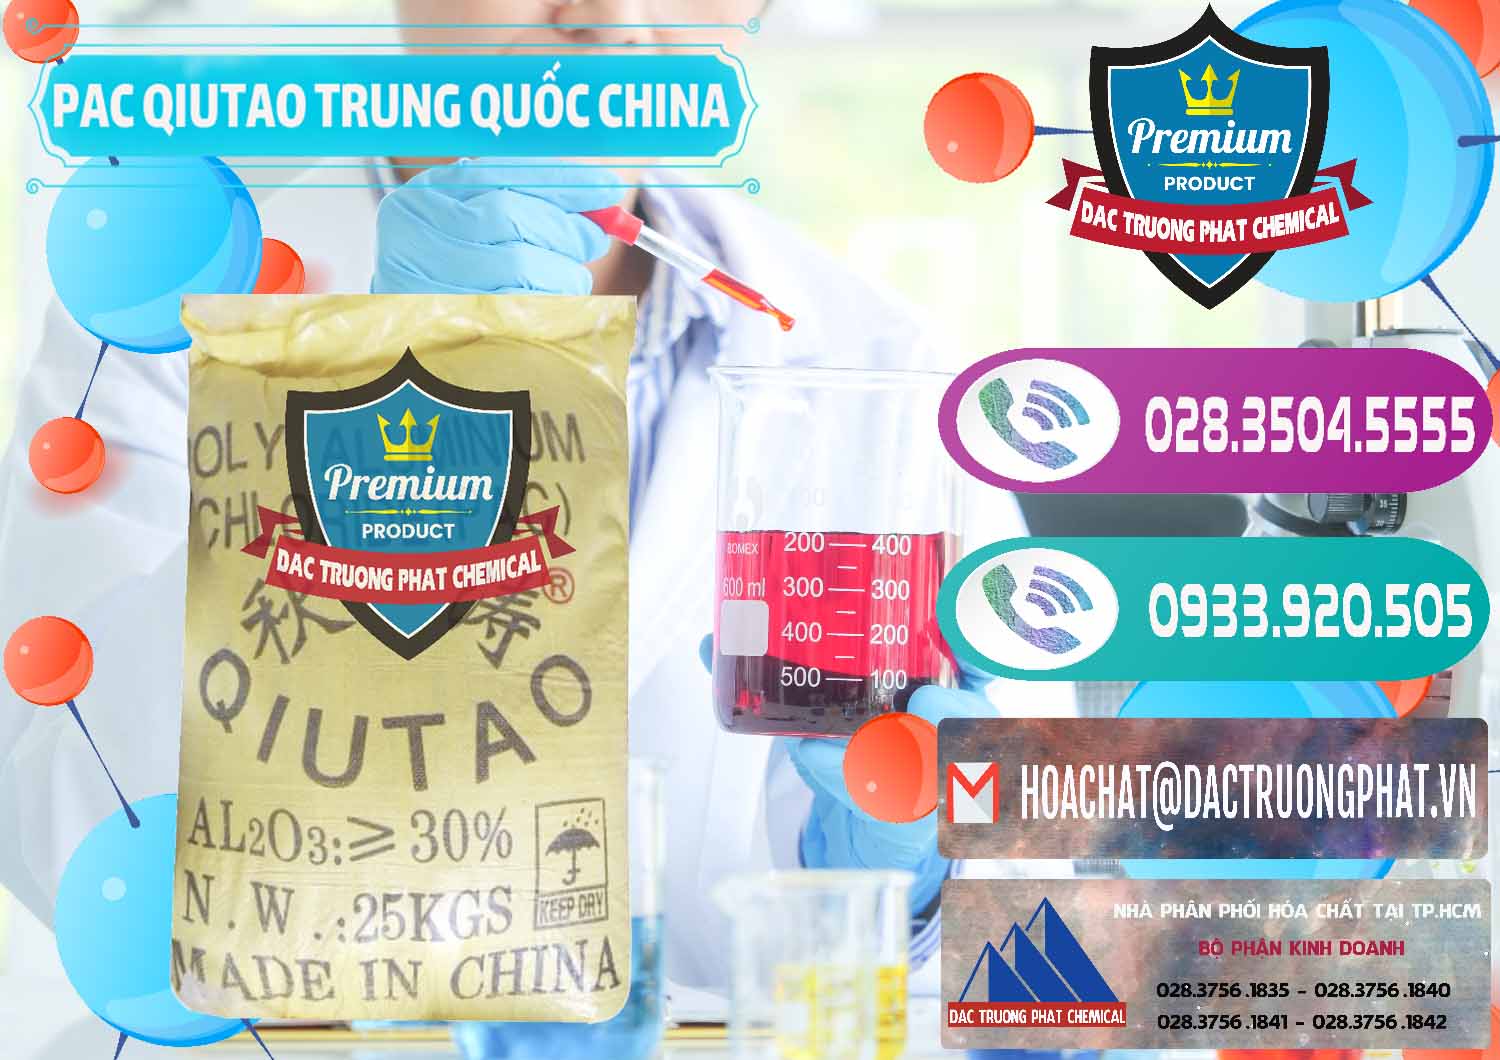 Cty bán & cung cấp PAC - Polyaluminium Chloride Qiutao Trung Quốc China - 0267 - Cty cung cấp - bán hóa chất tại TP.HCM - hoachatxulynuoc.com